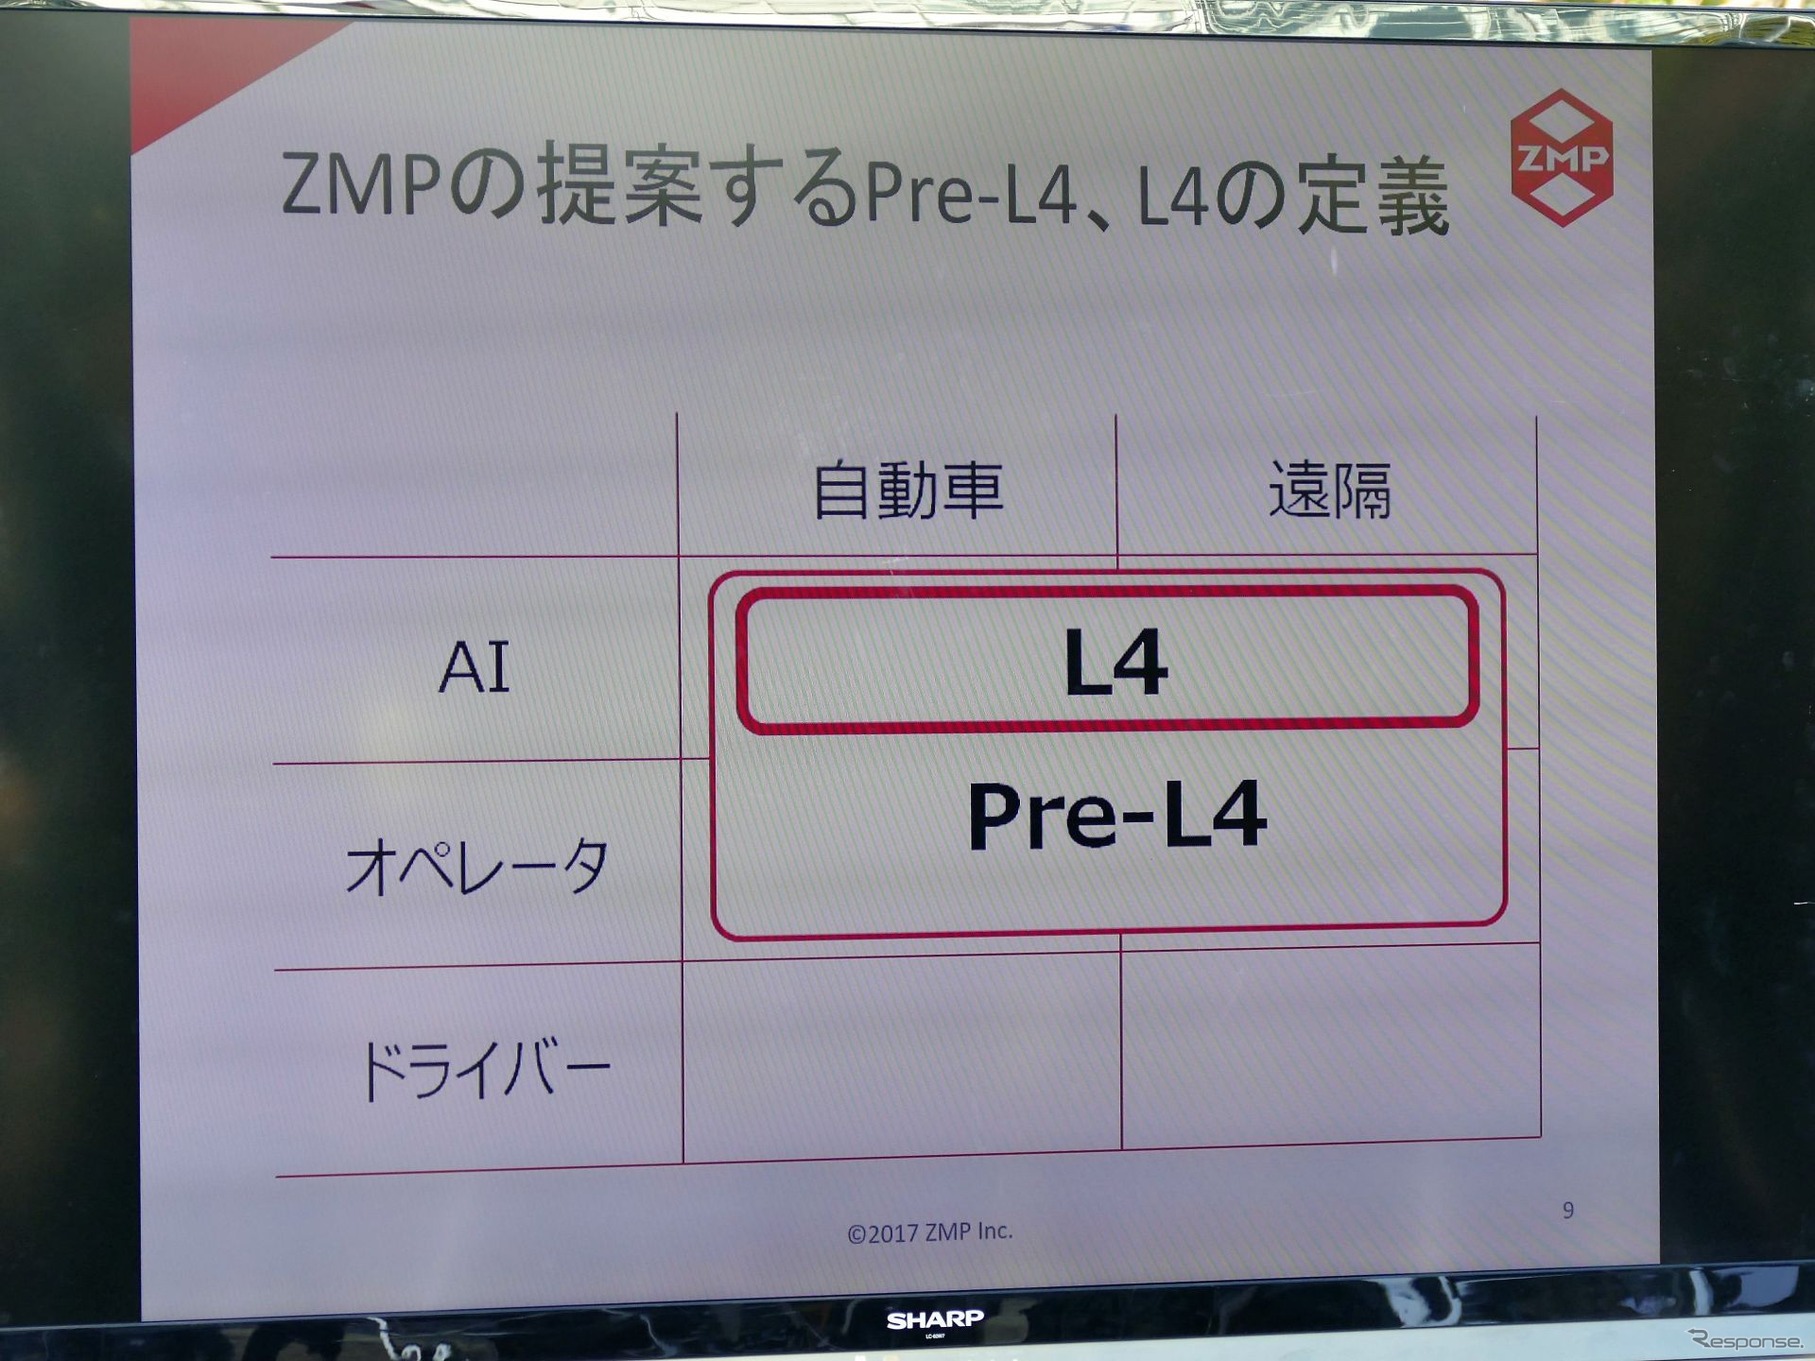 ZMPは今回の実験をプレレベル4と位置付ける